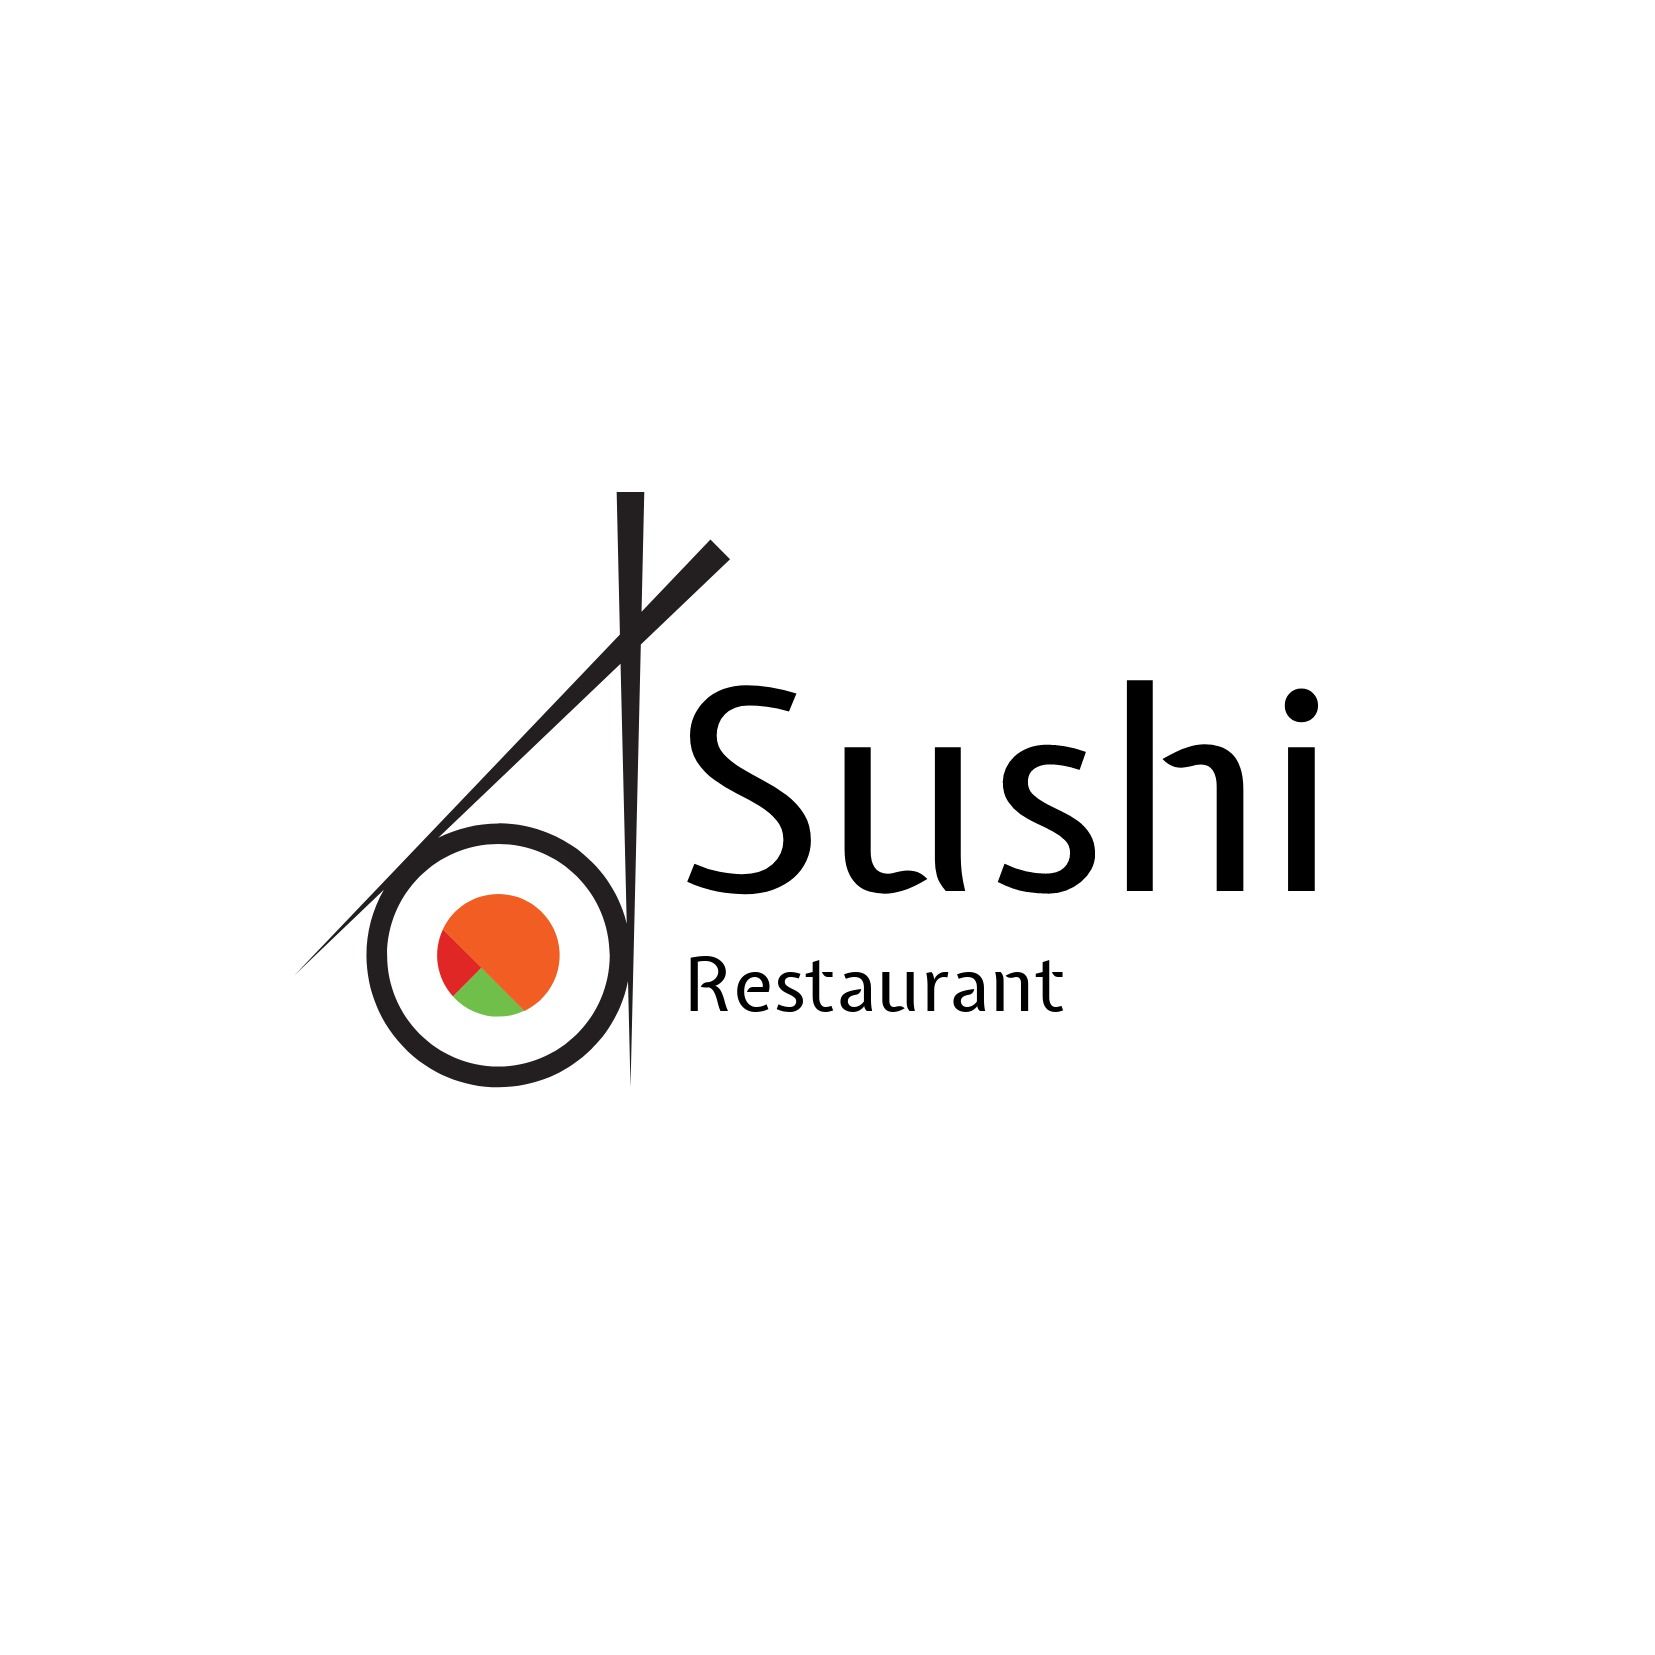 Logo du restaurant de sushi avec baguettes et sushi frais - Netteté de la police Expletus Sans - Image